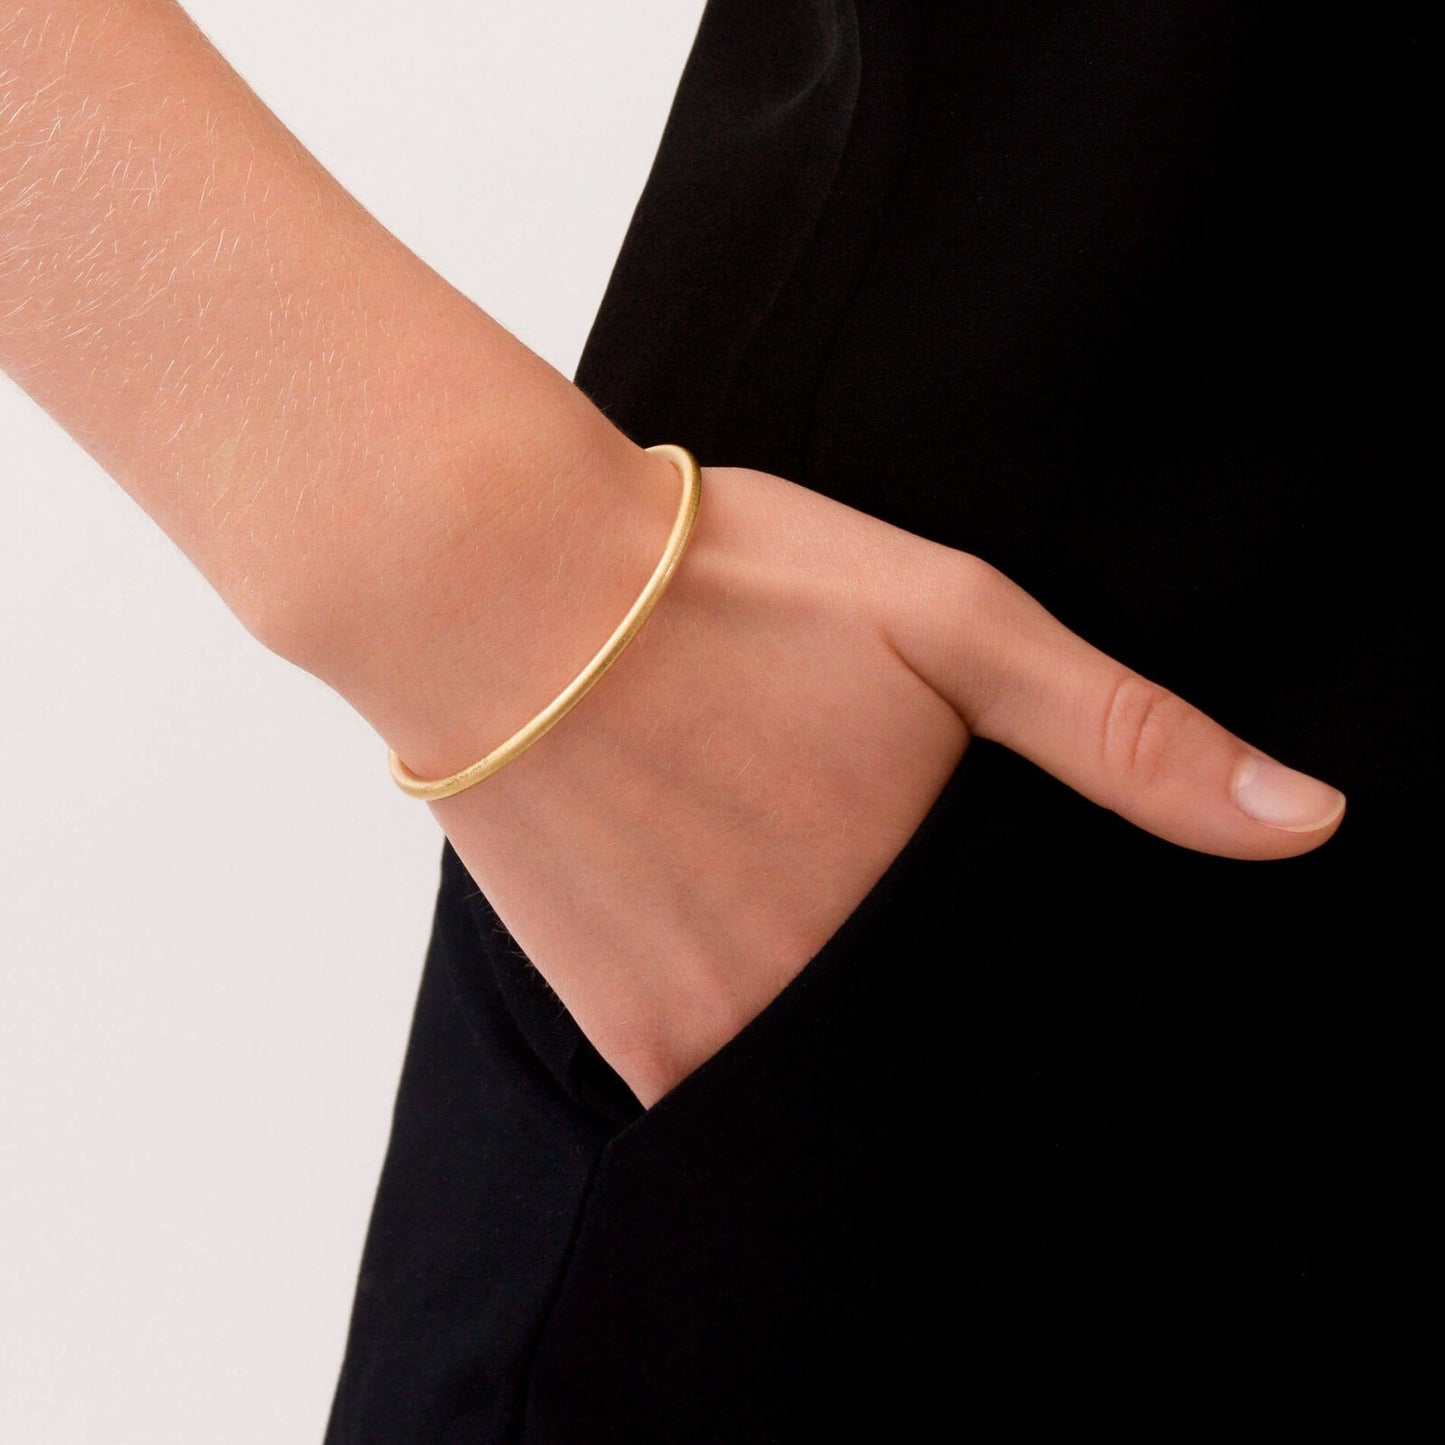 Infinity Open bangle bracelet. Gold plated. Danish Copenhagen